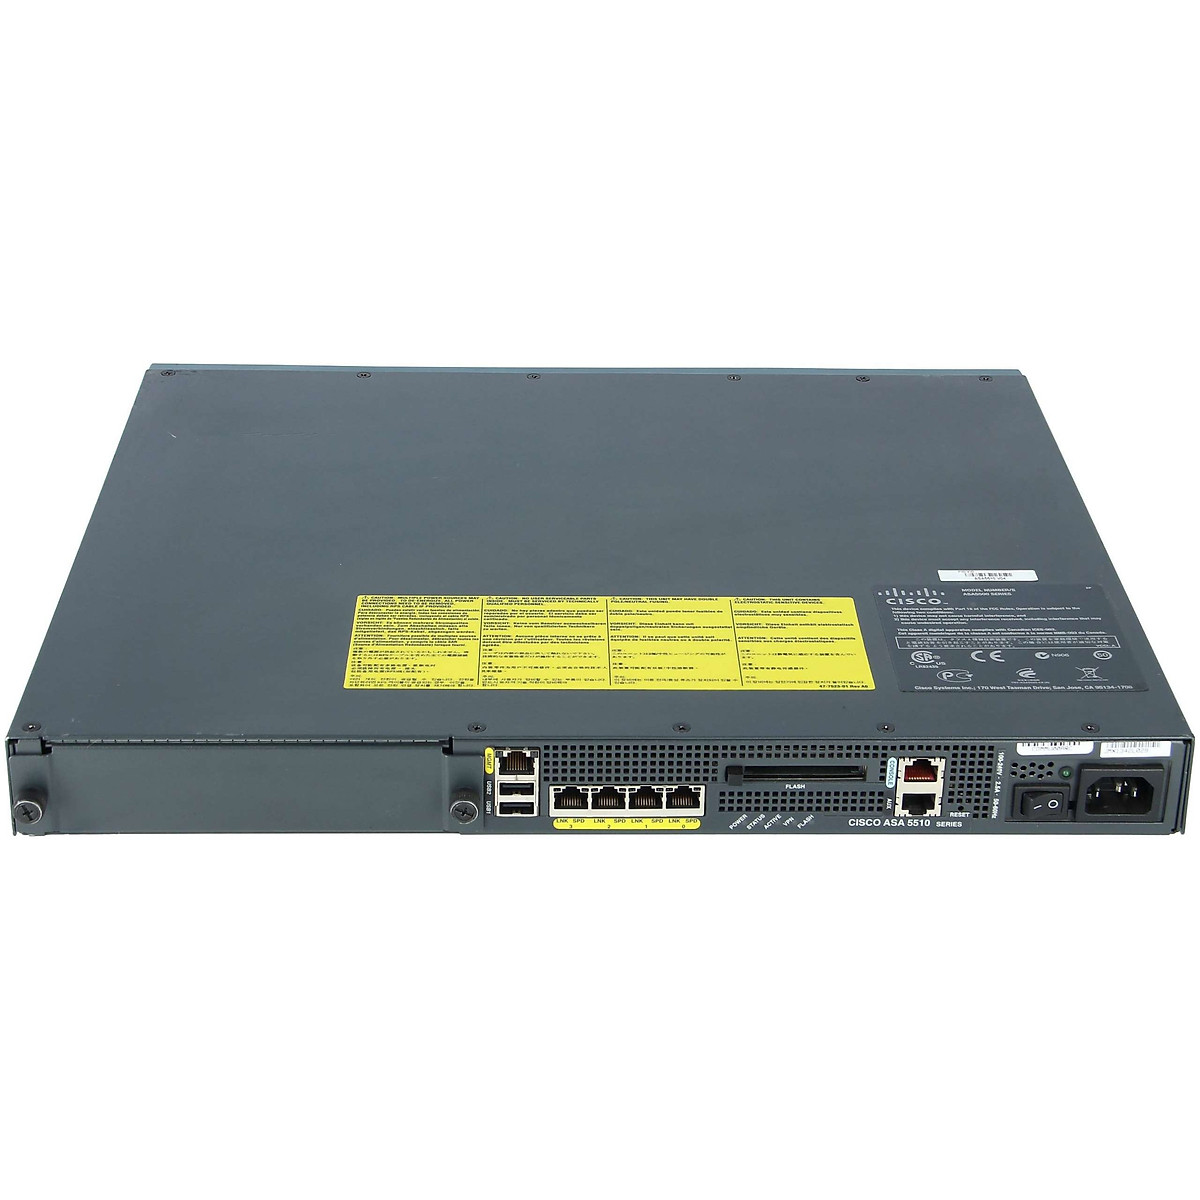 Thiết bị Firewall Cisco ASA5510-SEC-BUN-K9 là một trong những giải pháp hàng đầu để bảo vệ hệ thống mạng của bạn khỏi các cuộc tấn công. Hãy xem ảnh liên quan để thấy Firewall Cisco ASA5510-SEC-BUN-K9 được thiết kế ra sao và hoạt động như thế nào.